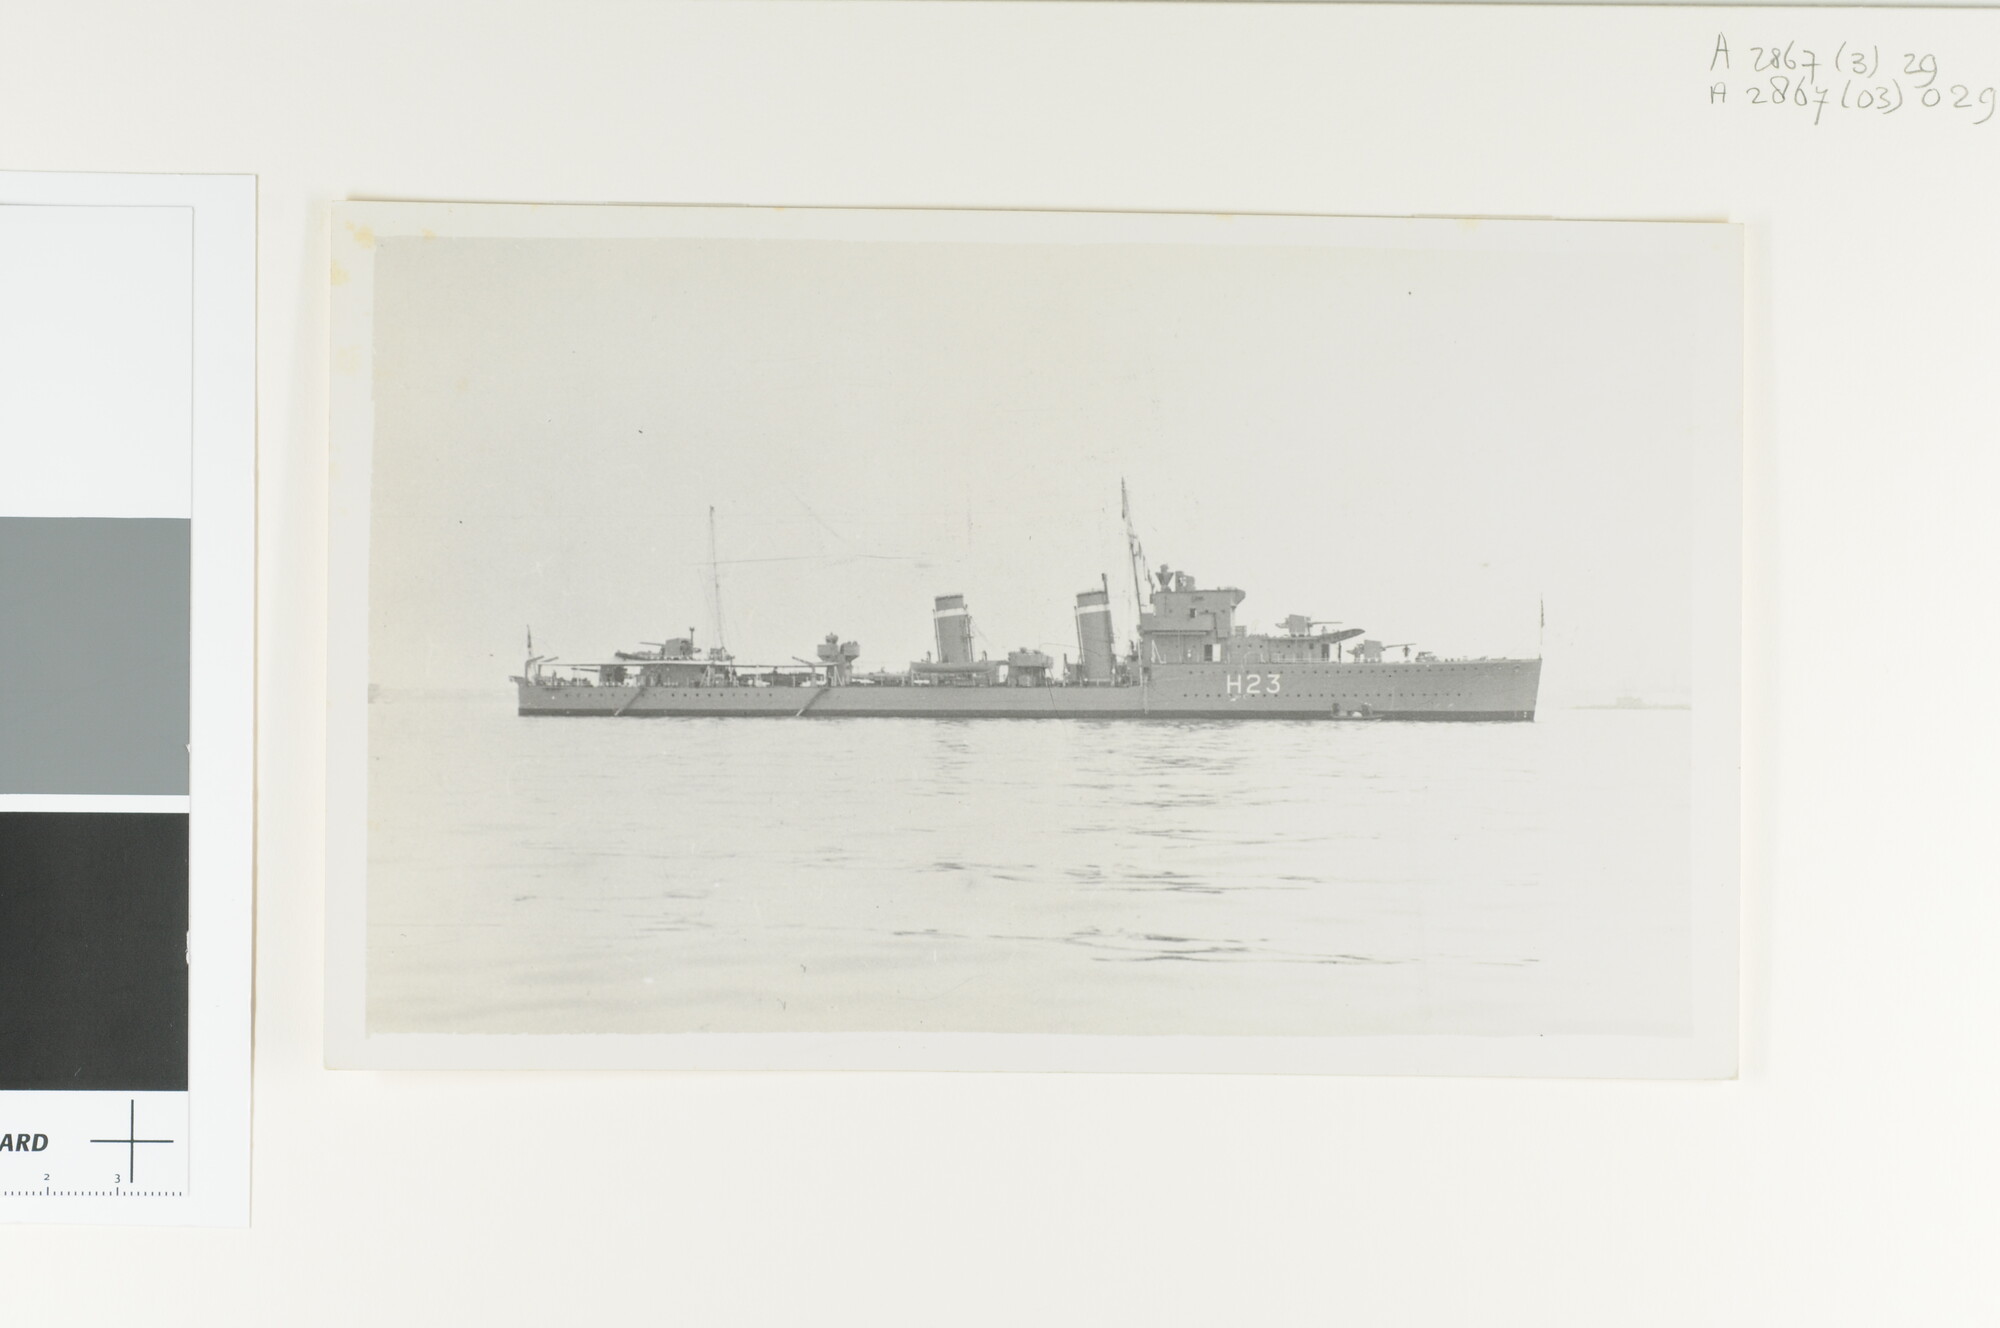 A.2867(03)029; De Britse destroyer HMS 'Echo' (H 23) van de Eclipse-class ligt voor anker op een rede; foto